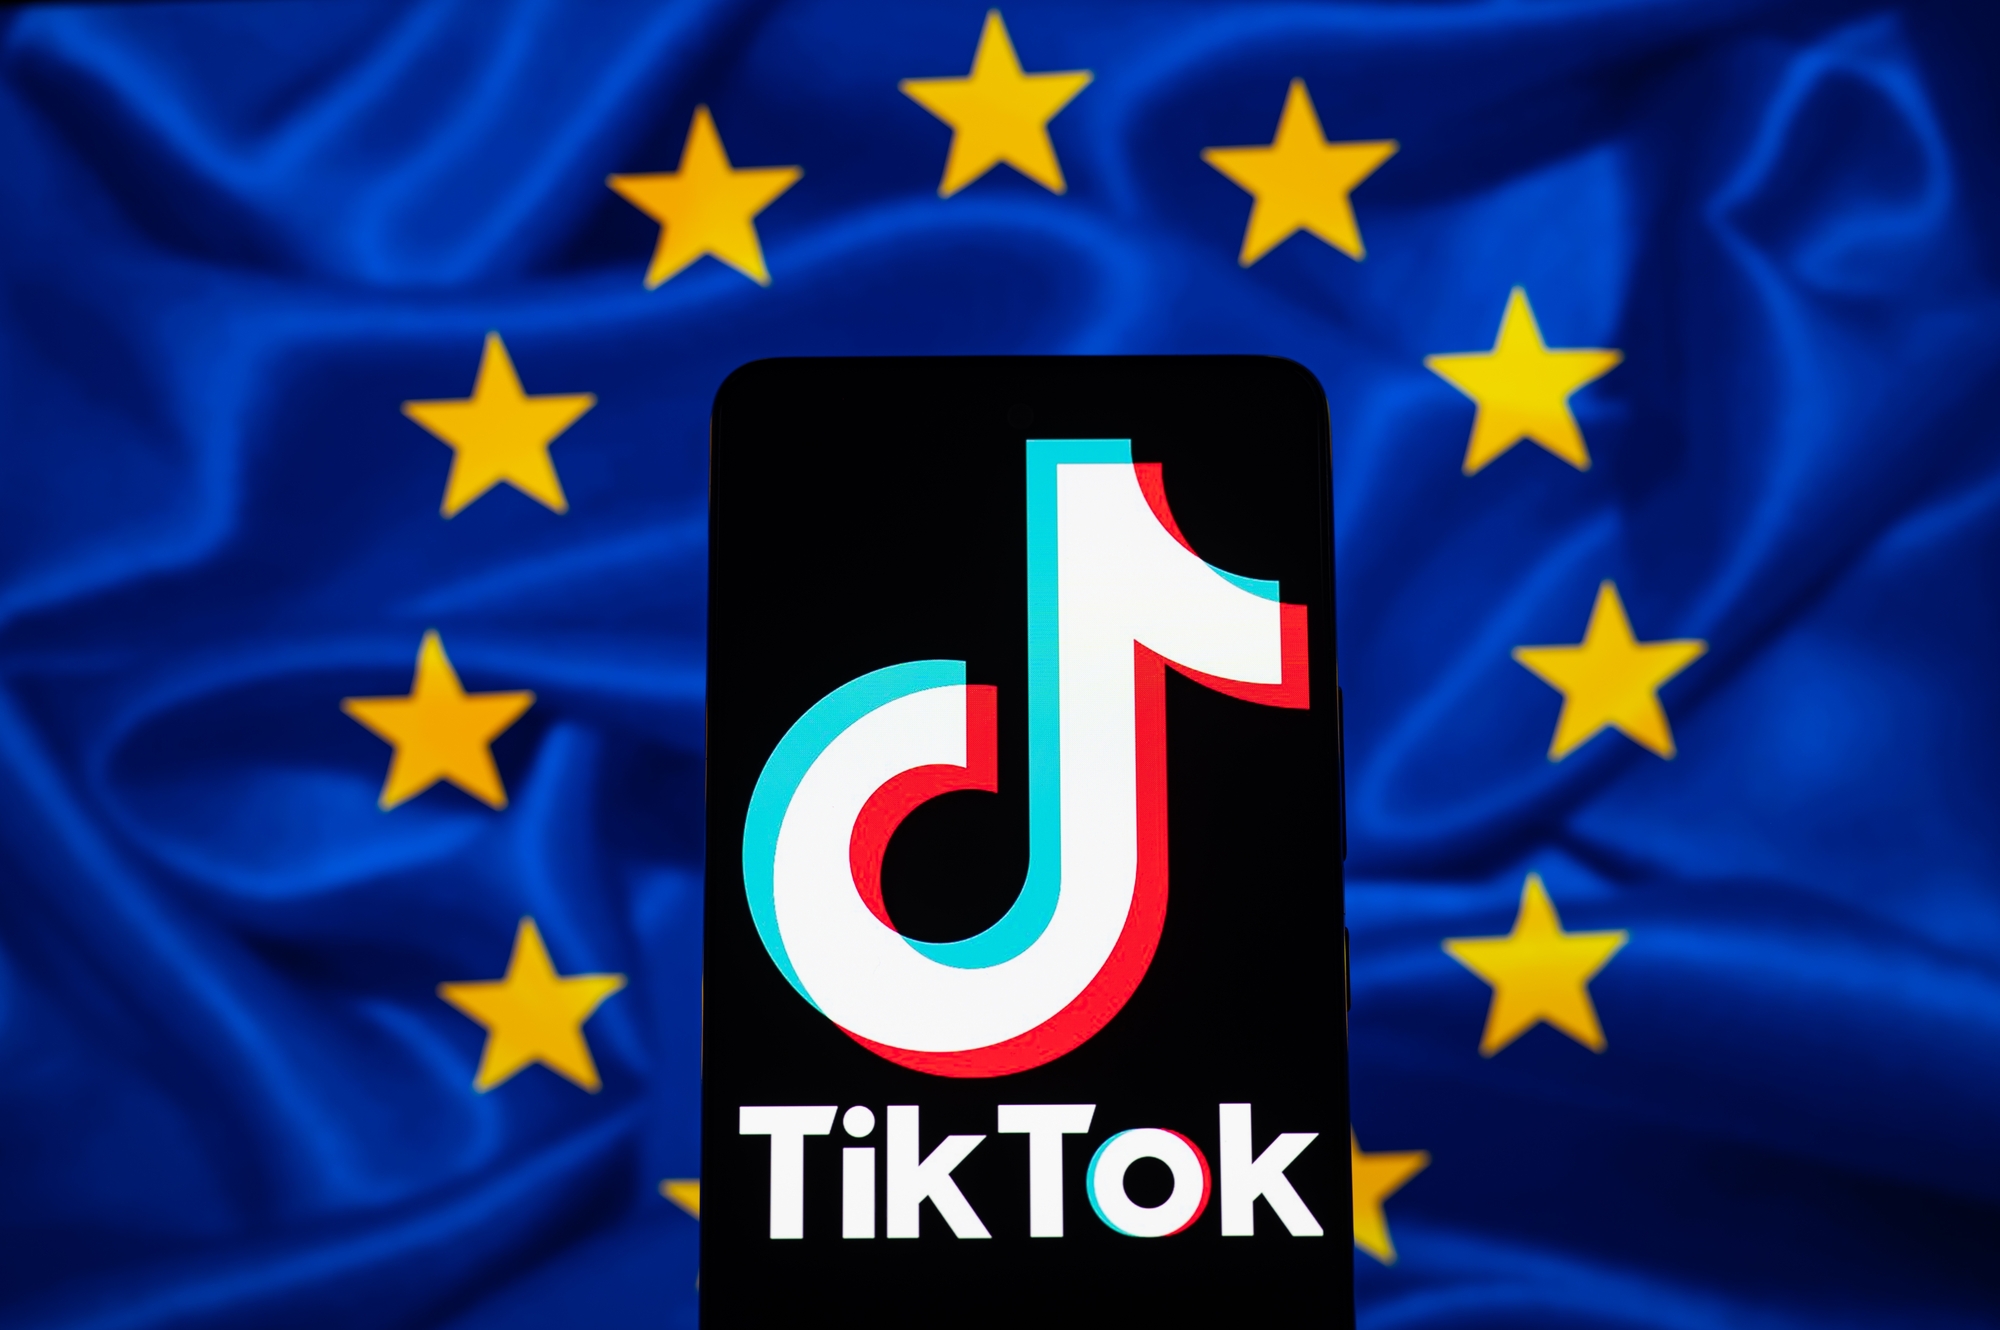 TikTok s'engage dans la lutte contre la désinformation en vue des élections européennes